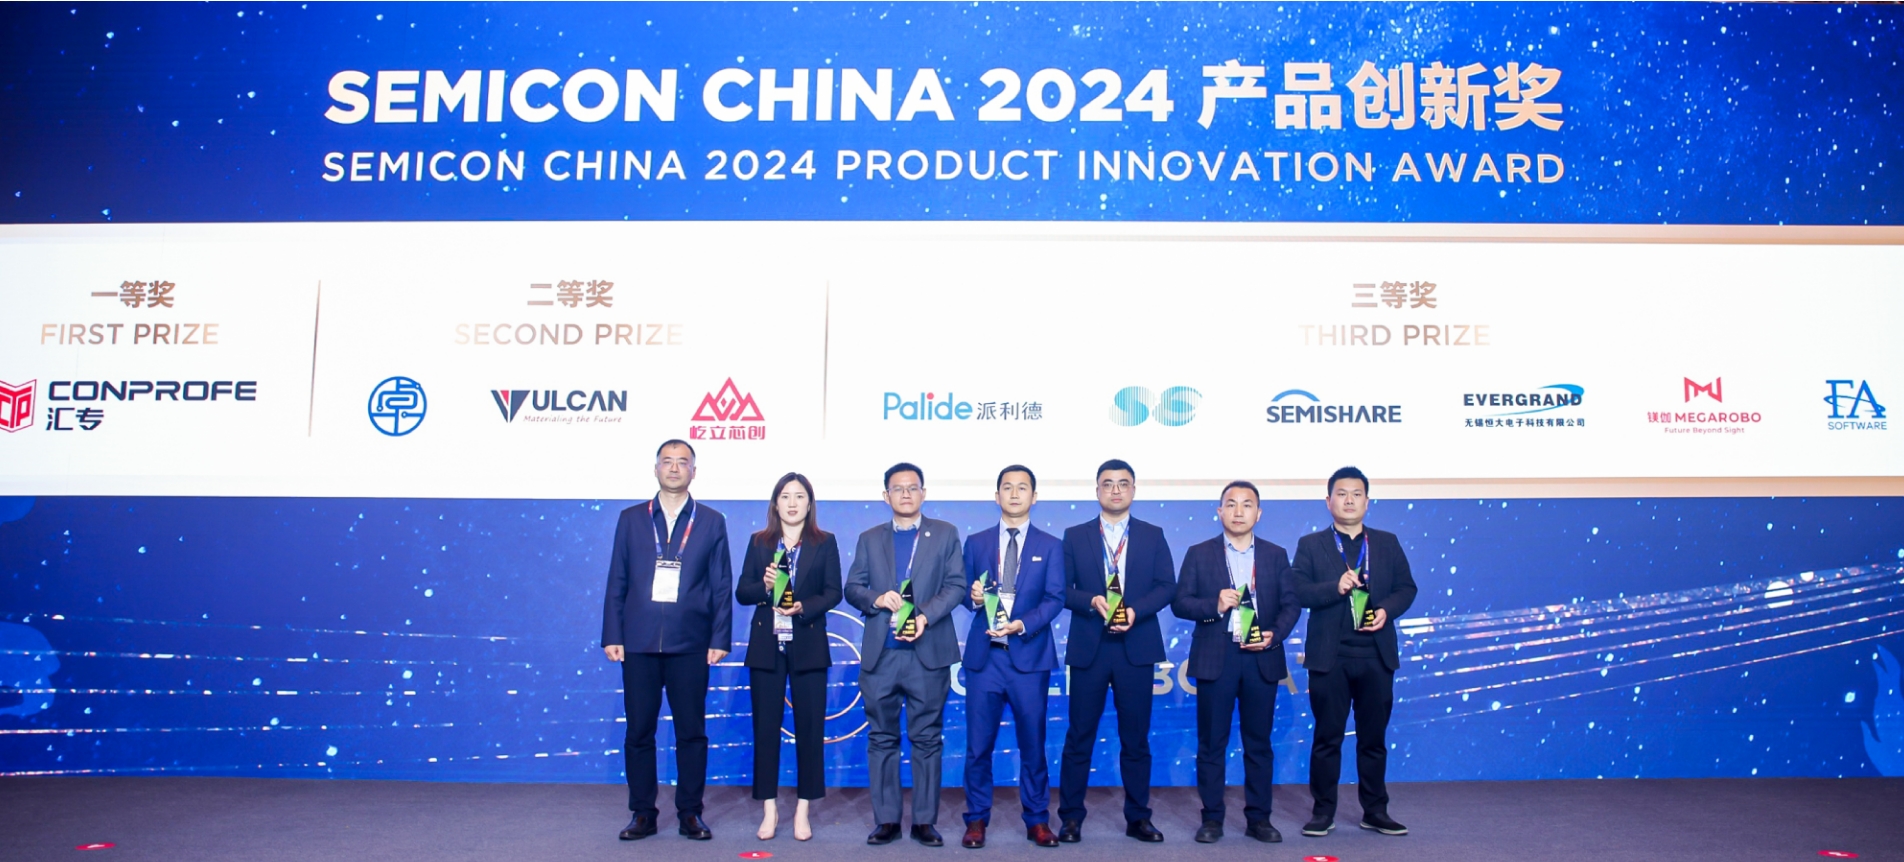 创新驱动迭代，上扬软件荣膺SEMICON CHINA 2024 产品创新奖